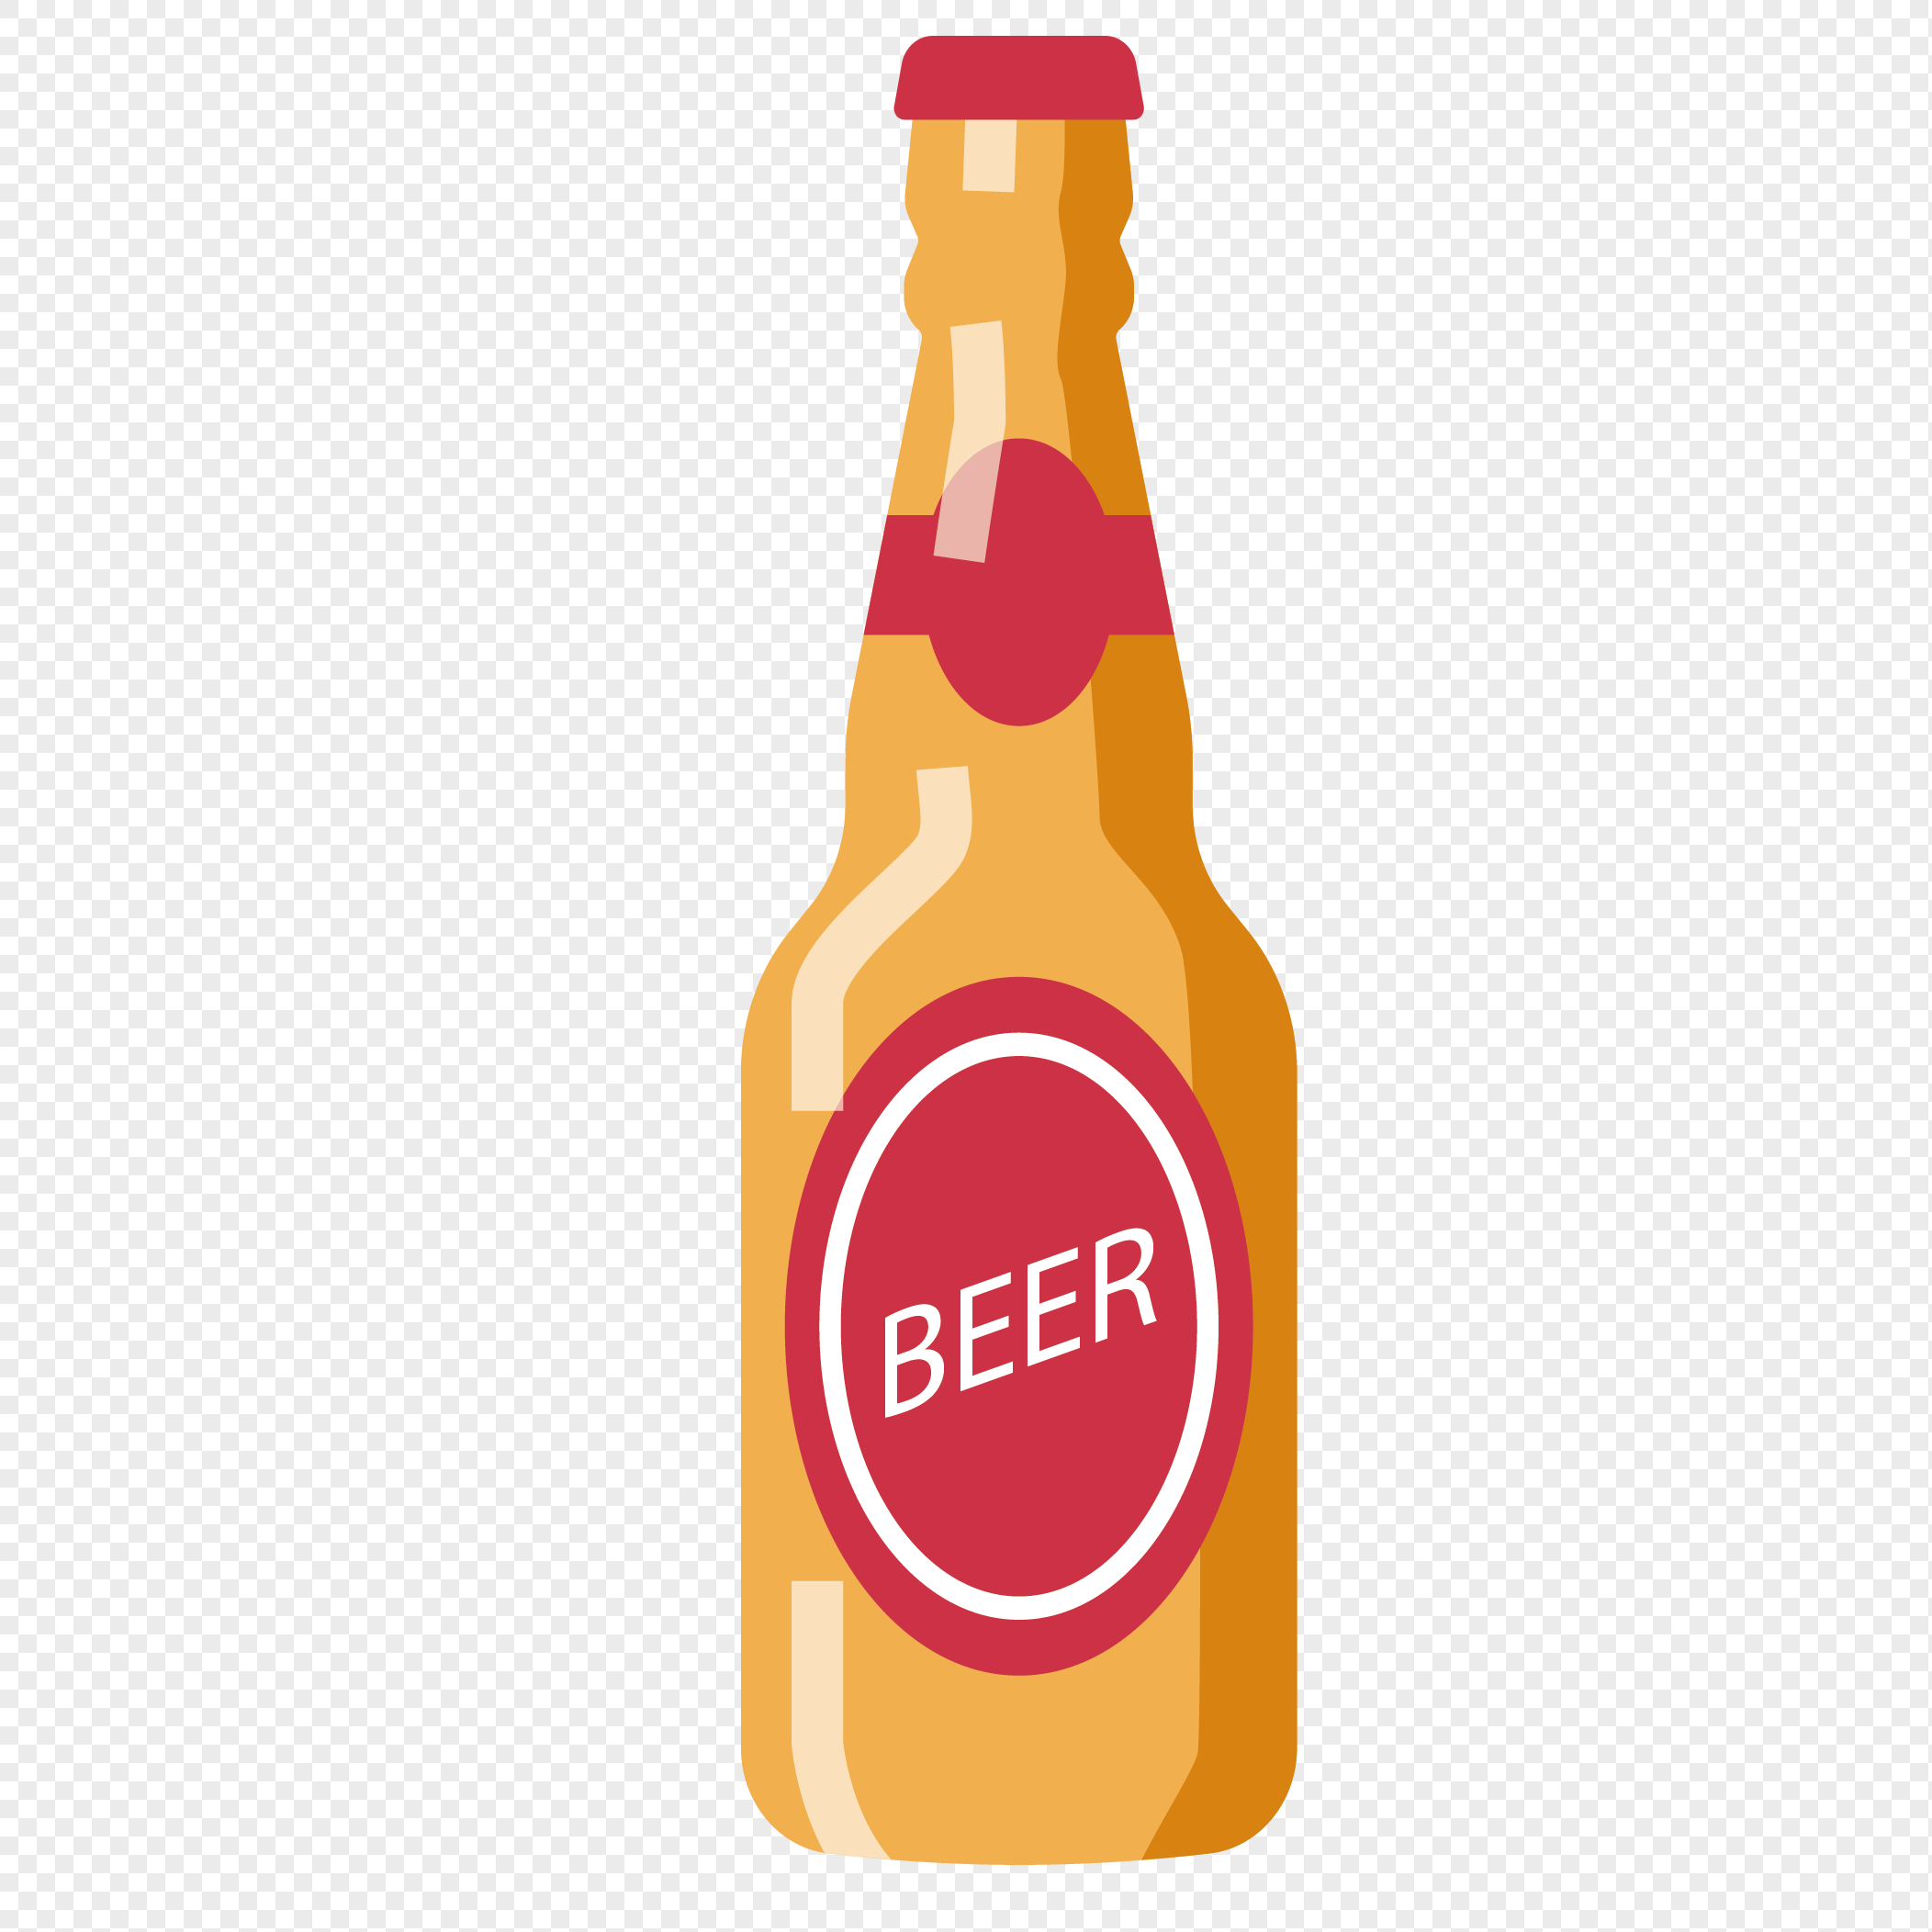 beer illustration free download